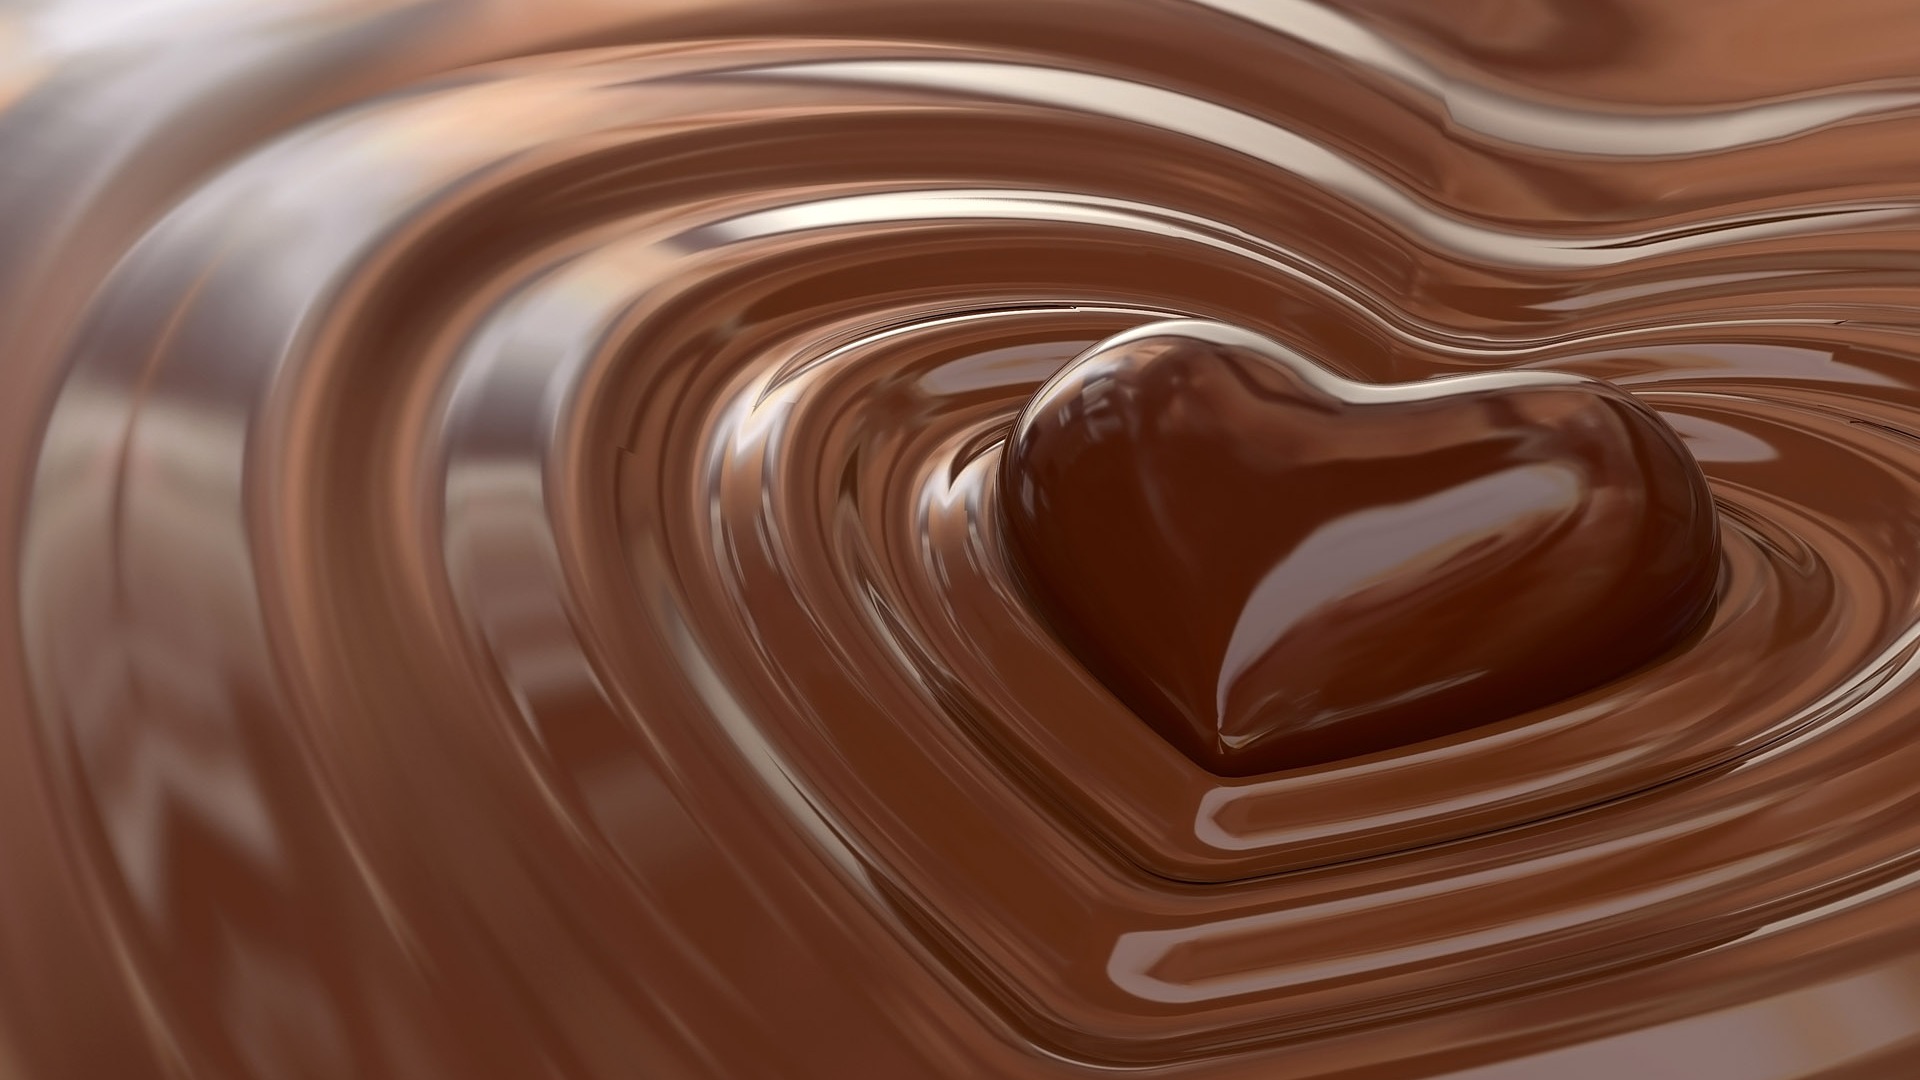 Chocolate plano de fondo (2) #12 - 1920x1080